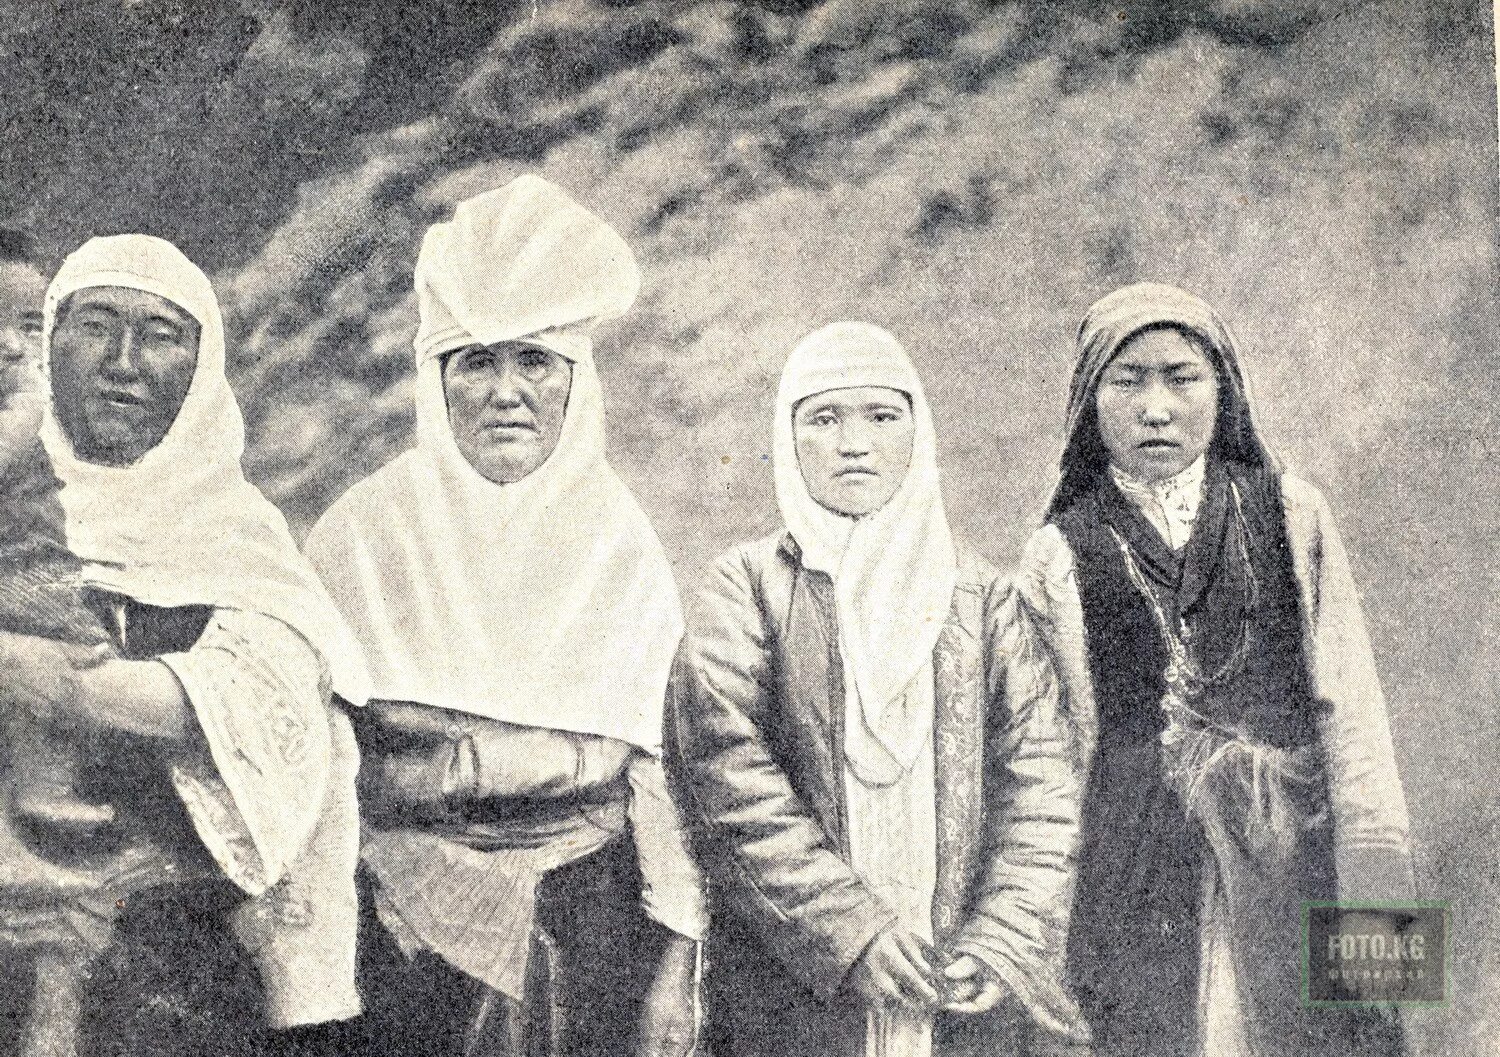 Казахстан 1900. Кыргызы 19 века. Казахские женщины двадцатого века. Национальная одежда кыргызов женская. Киргизка 19 век.